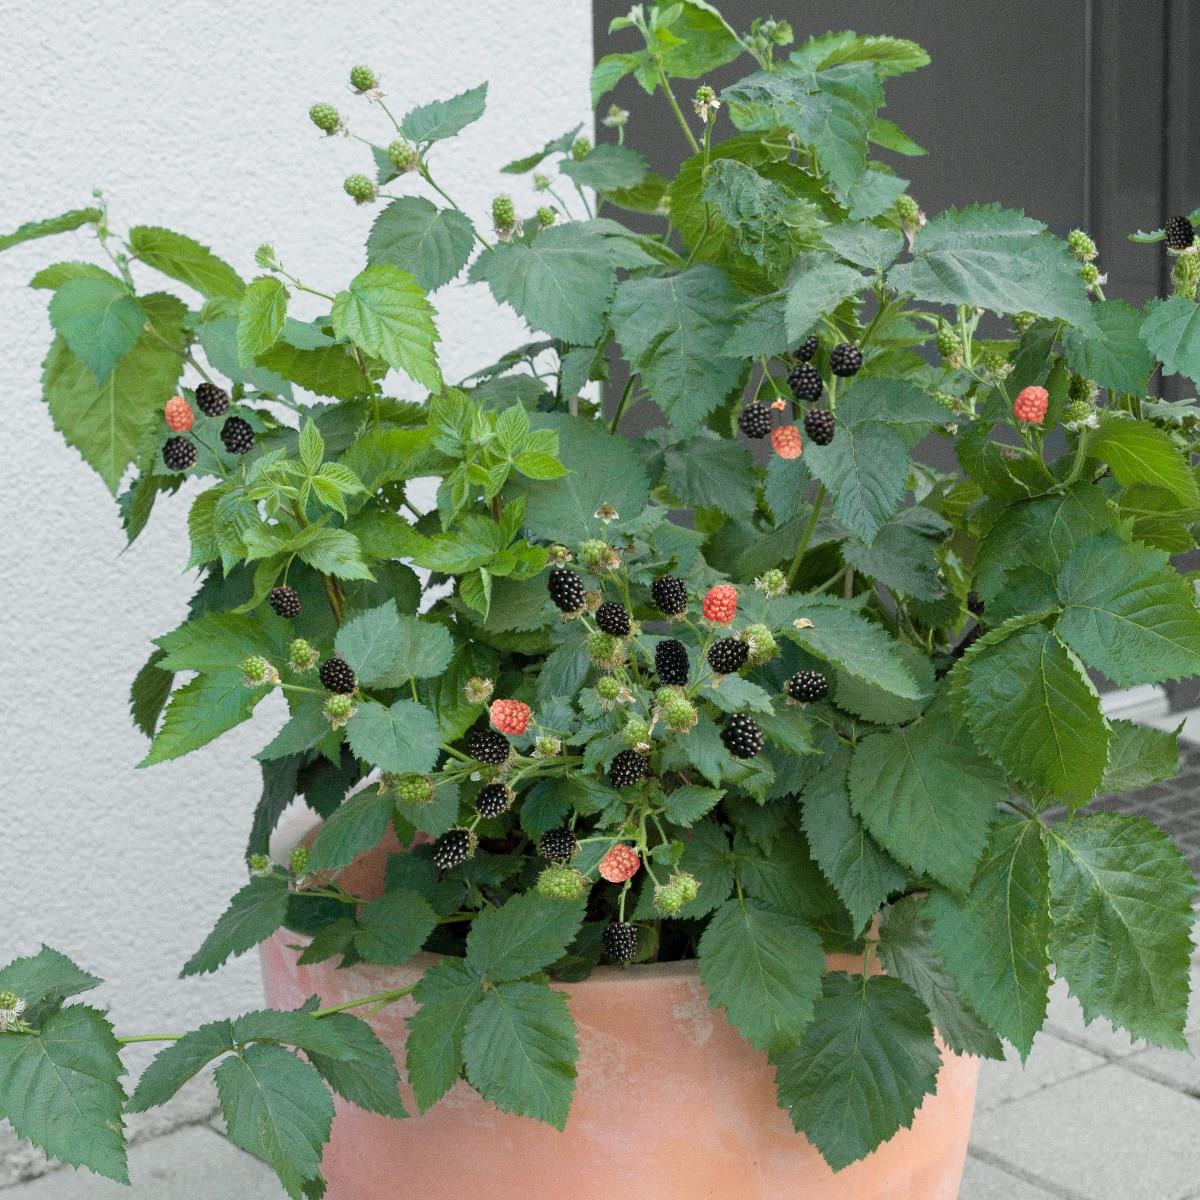 Rubus fruticosus Lowberry  Little Black Prince, Björnbär